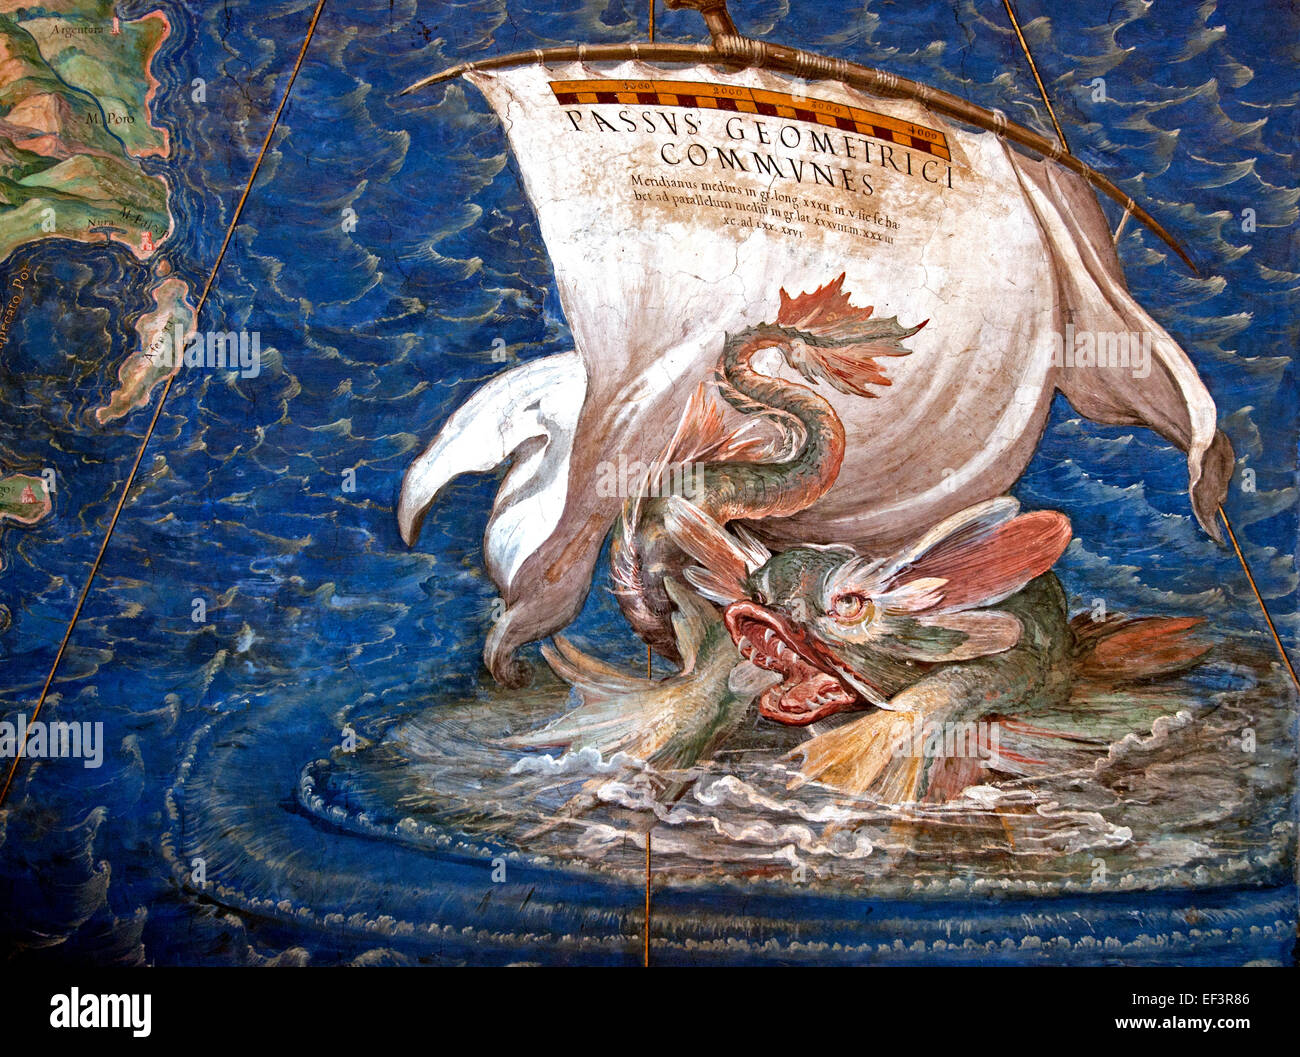 Un galeone nell'Adriatico, dettaglio dalla Galleria delle carte geografiche, 1580-83 Danti, Egnazio (1536-86) Roma Vaticana Italia carte geografiche Foto Stock